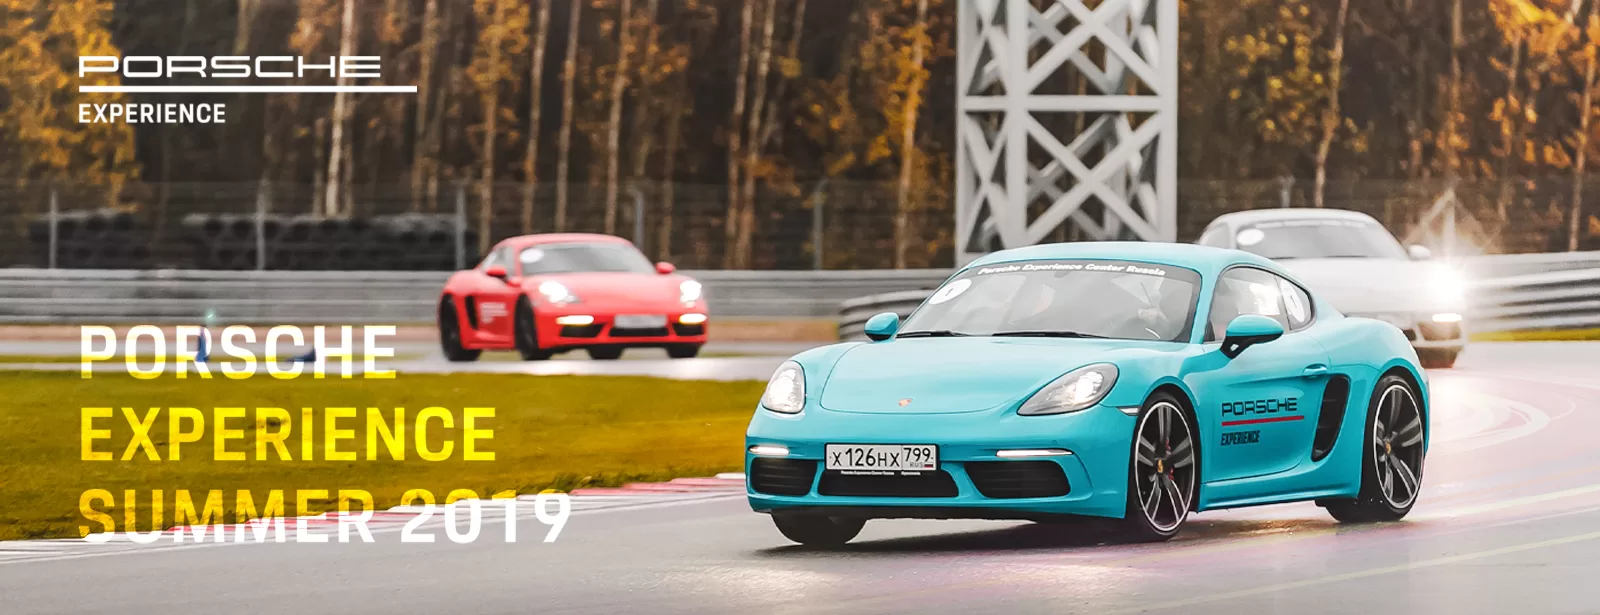 Porsche Experience Summer 2019 — исключительный опыт управления спорткарами.